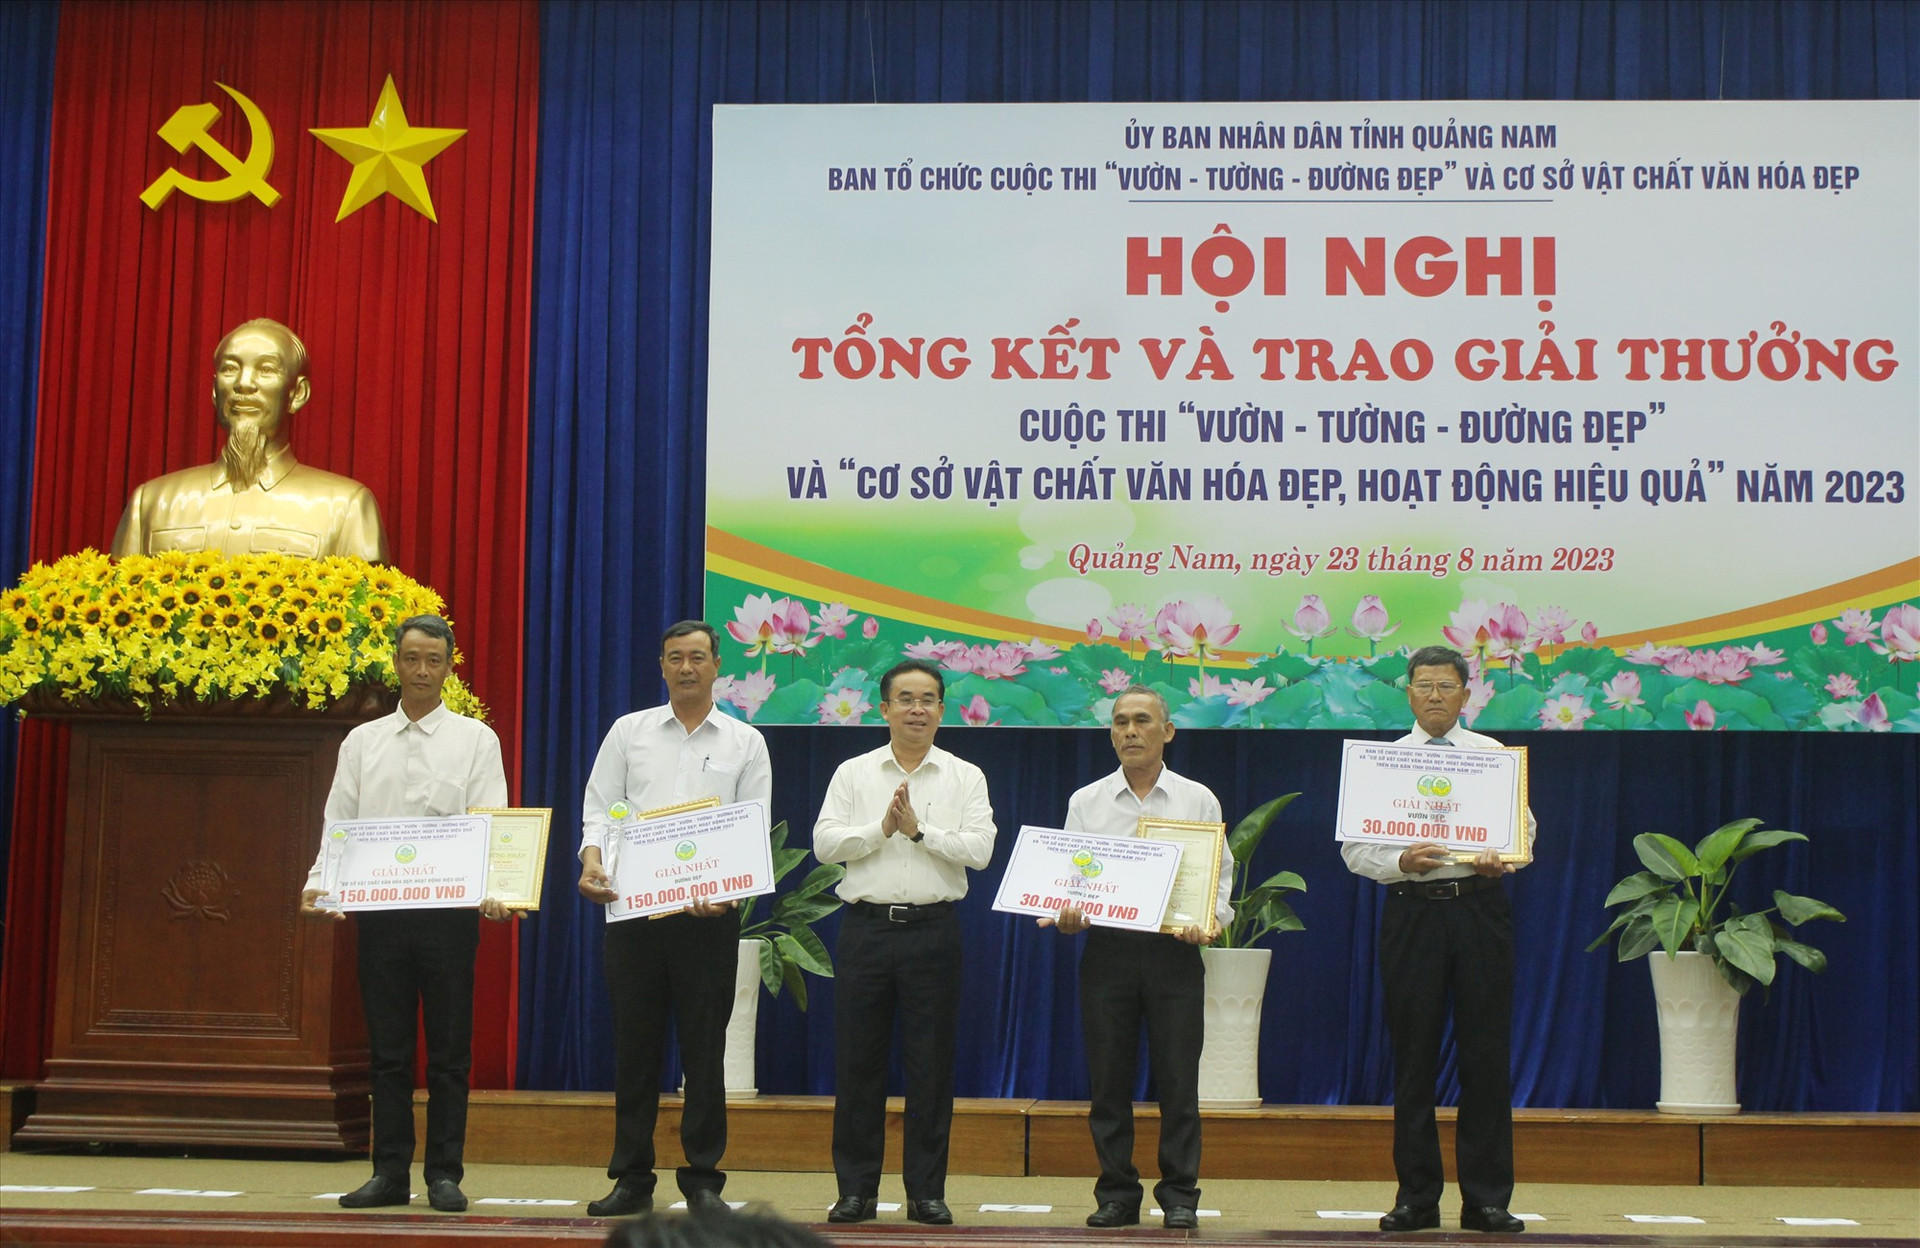 Phó Chủ tịch UBND tỉnh Trần Anh Tuấn trao giải Nhất cho các tập thể và cá nhân. Ảnh: PV